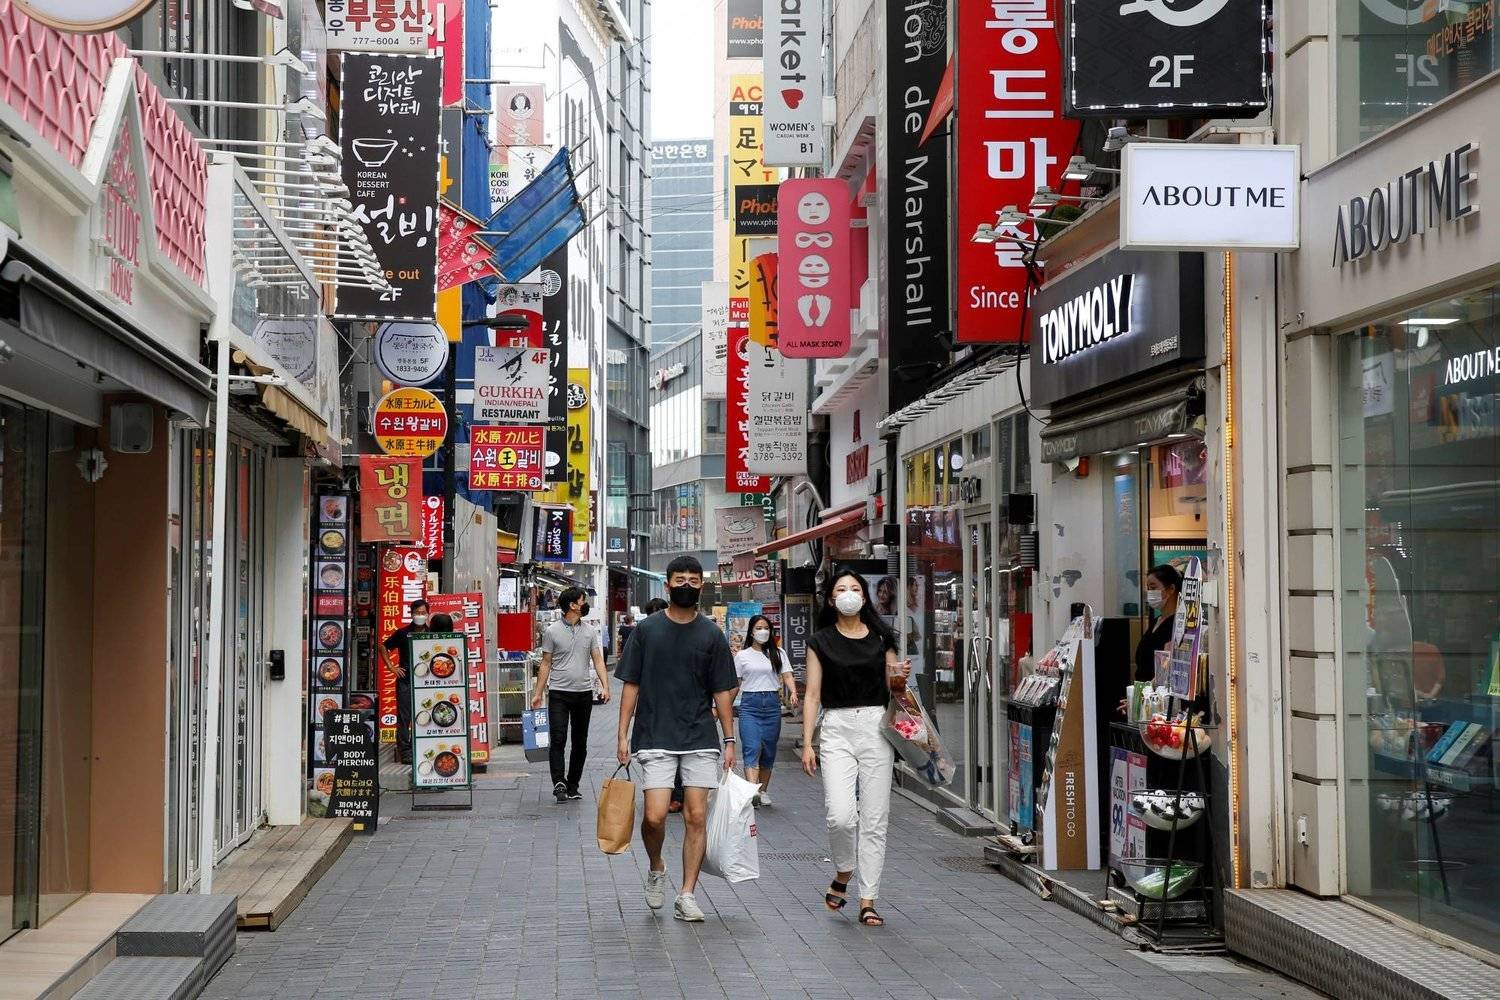 متسوقون في أحد الشوارع التجارية بالعاصمة الكورية الجنوبية سيول (رويترز)